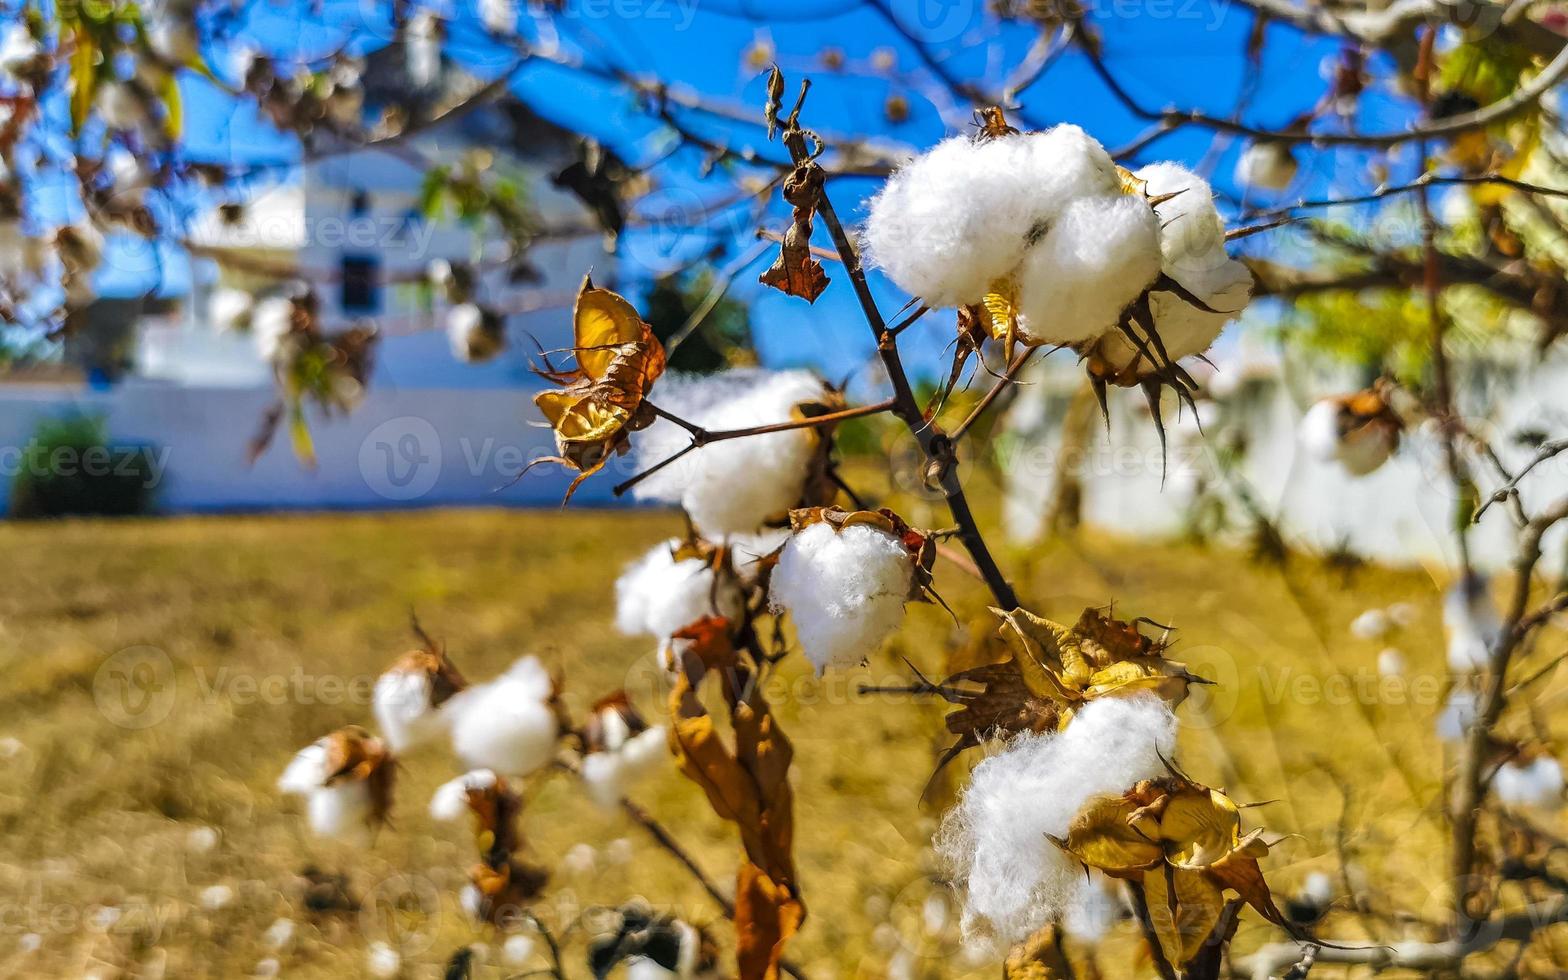 White cotton on tree or plant in Puerto Escondido Mexico. photo